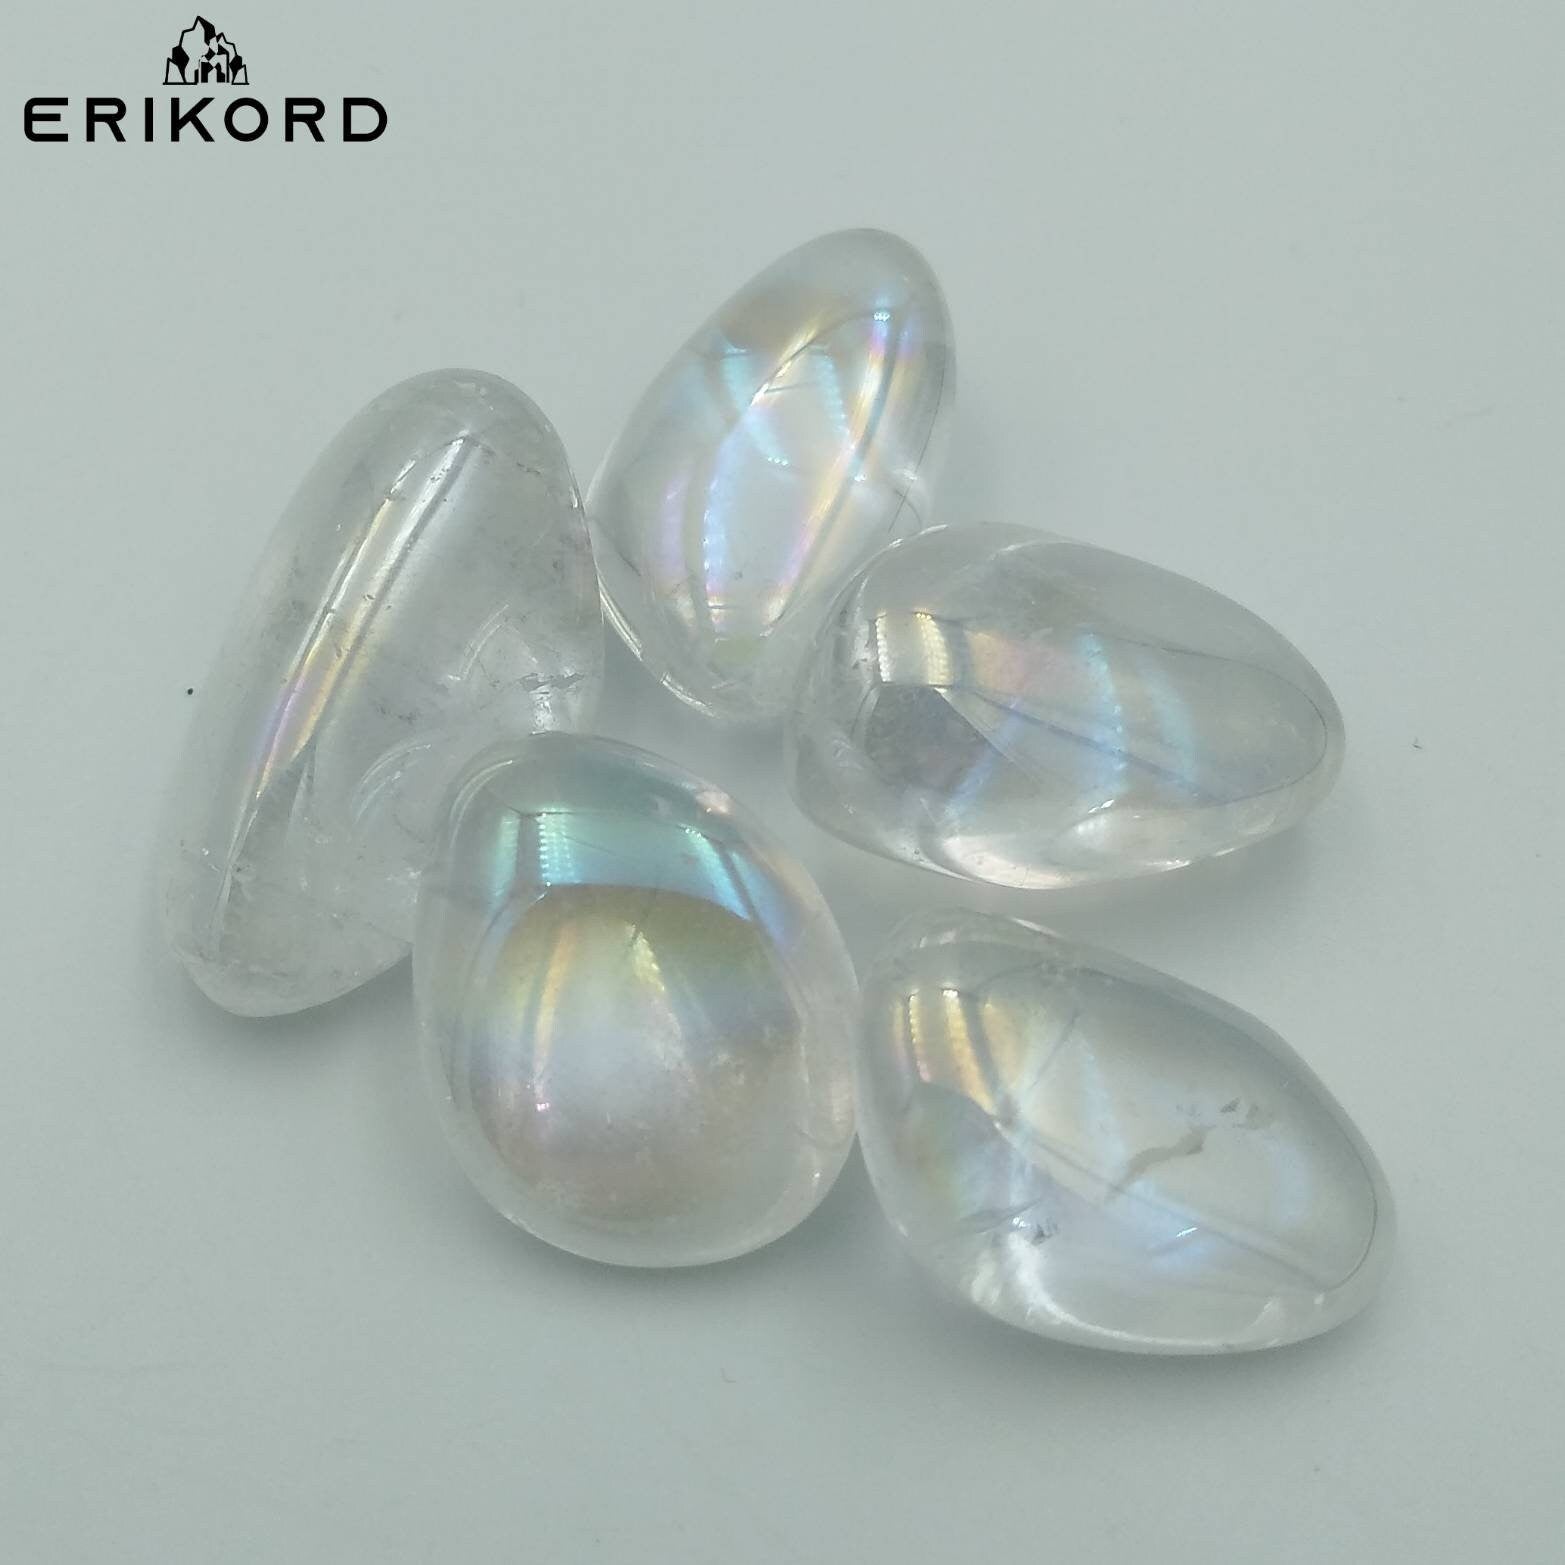 50/100/200g Aura Quartz Tumbles - Titanium Quartz Coated - Aura Rainbow Colored Quartz - Rainbow Crystal Quartz - White Aura Tumbled Gem Lot